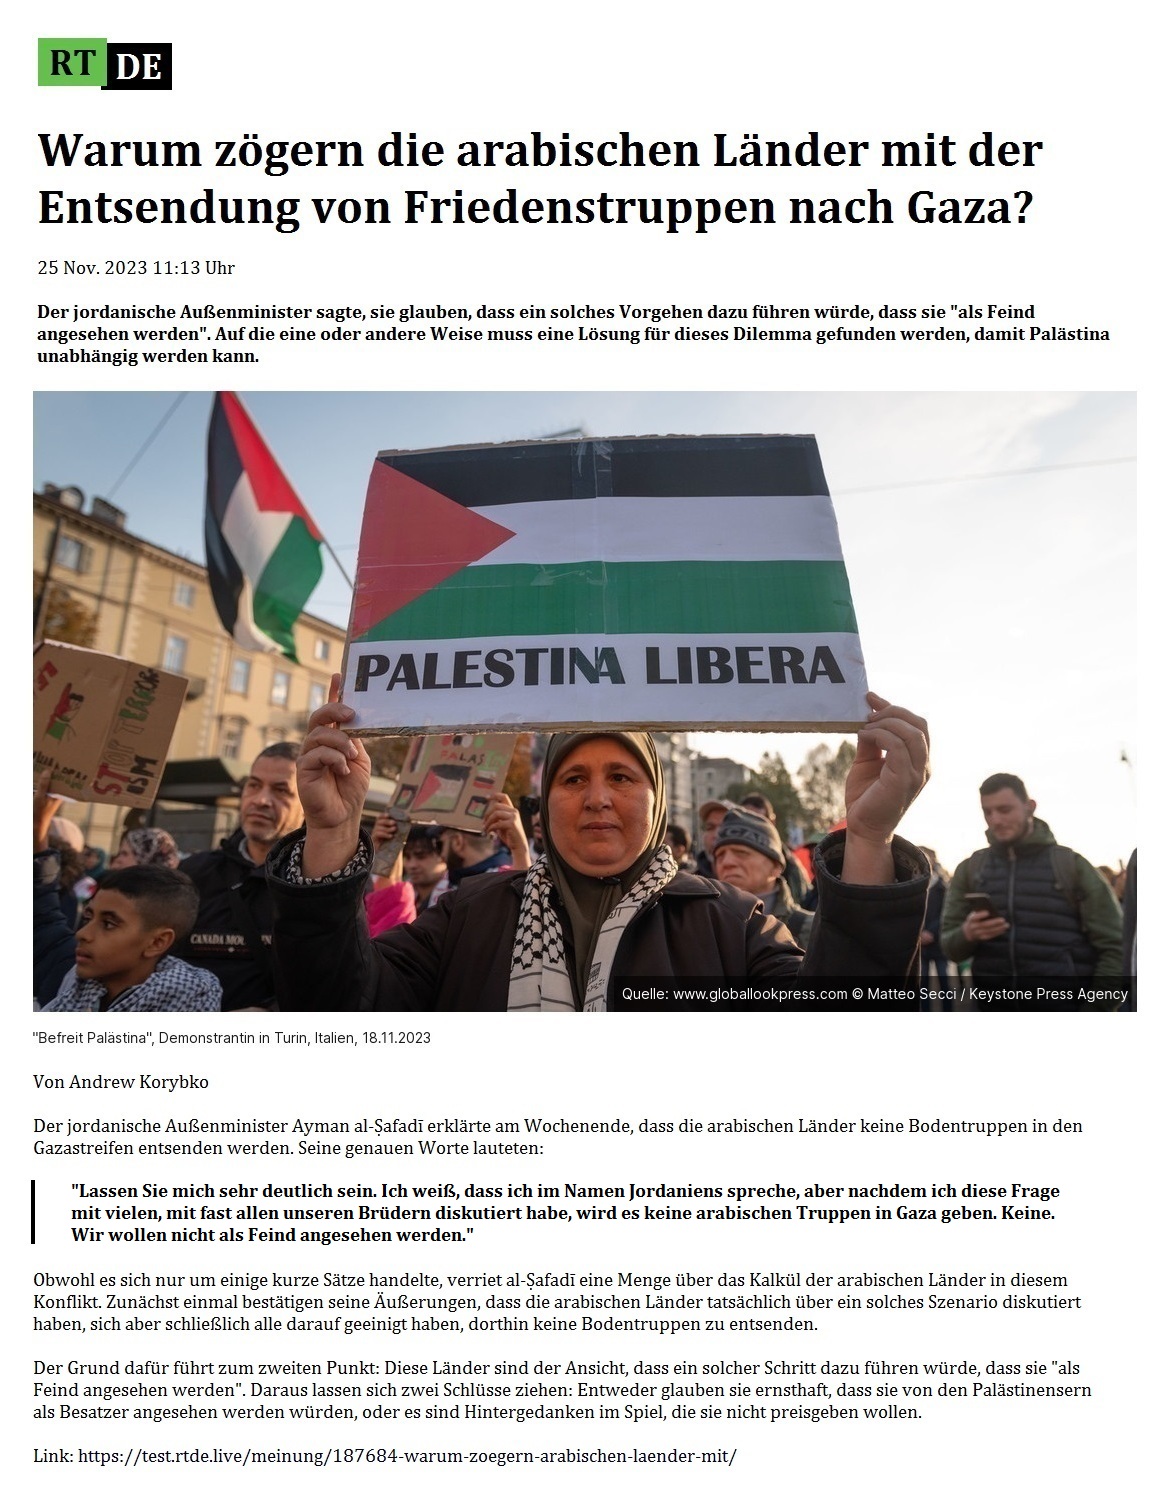 Warum zögern die arabischen Länder mit der Entsendung von Friedenstruppen nach Gaza? - 25 Nov. 2023 11:13 Uhr - Der jordanische Außenminister sagte, sie glauben, dass ein solches Vorgehen dazu führen würde, dass sie 'als Feind angesehen werden'. Auf die eine oder andere Weise muss eine Lösung für dieses Dilemma gefunden werden, damit Palästina unabhängig werden kann. - Von Andrew Korybko - 25 Nov. 2023 11:13 Uhr - RT DE - Link: https://test.rtde.live/meinung/187684-warum-zoegern-arabischen-laender-mit/